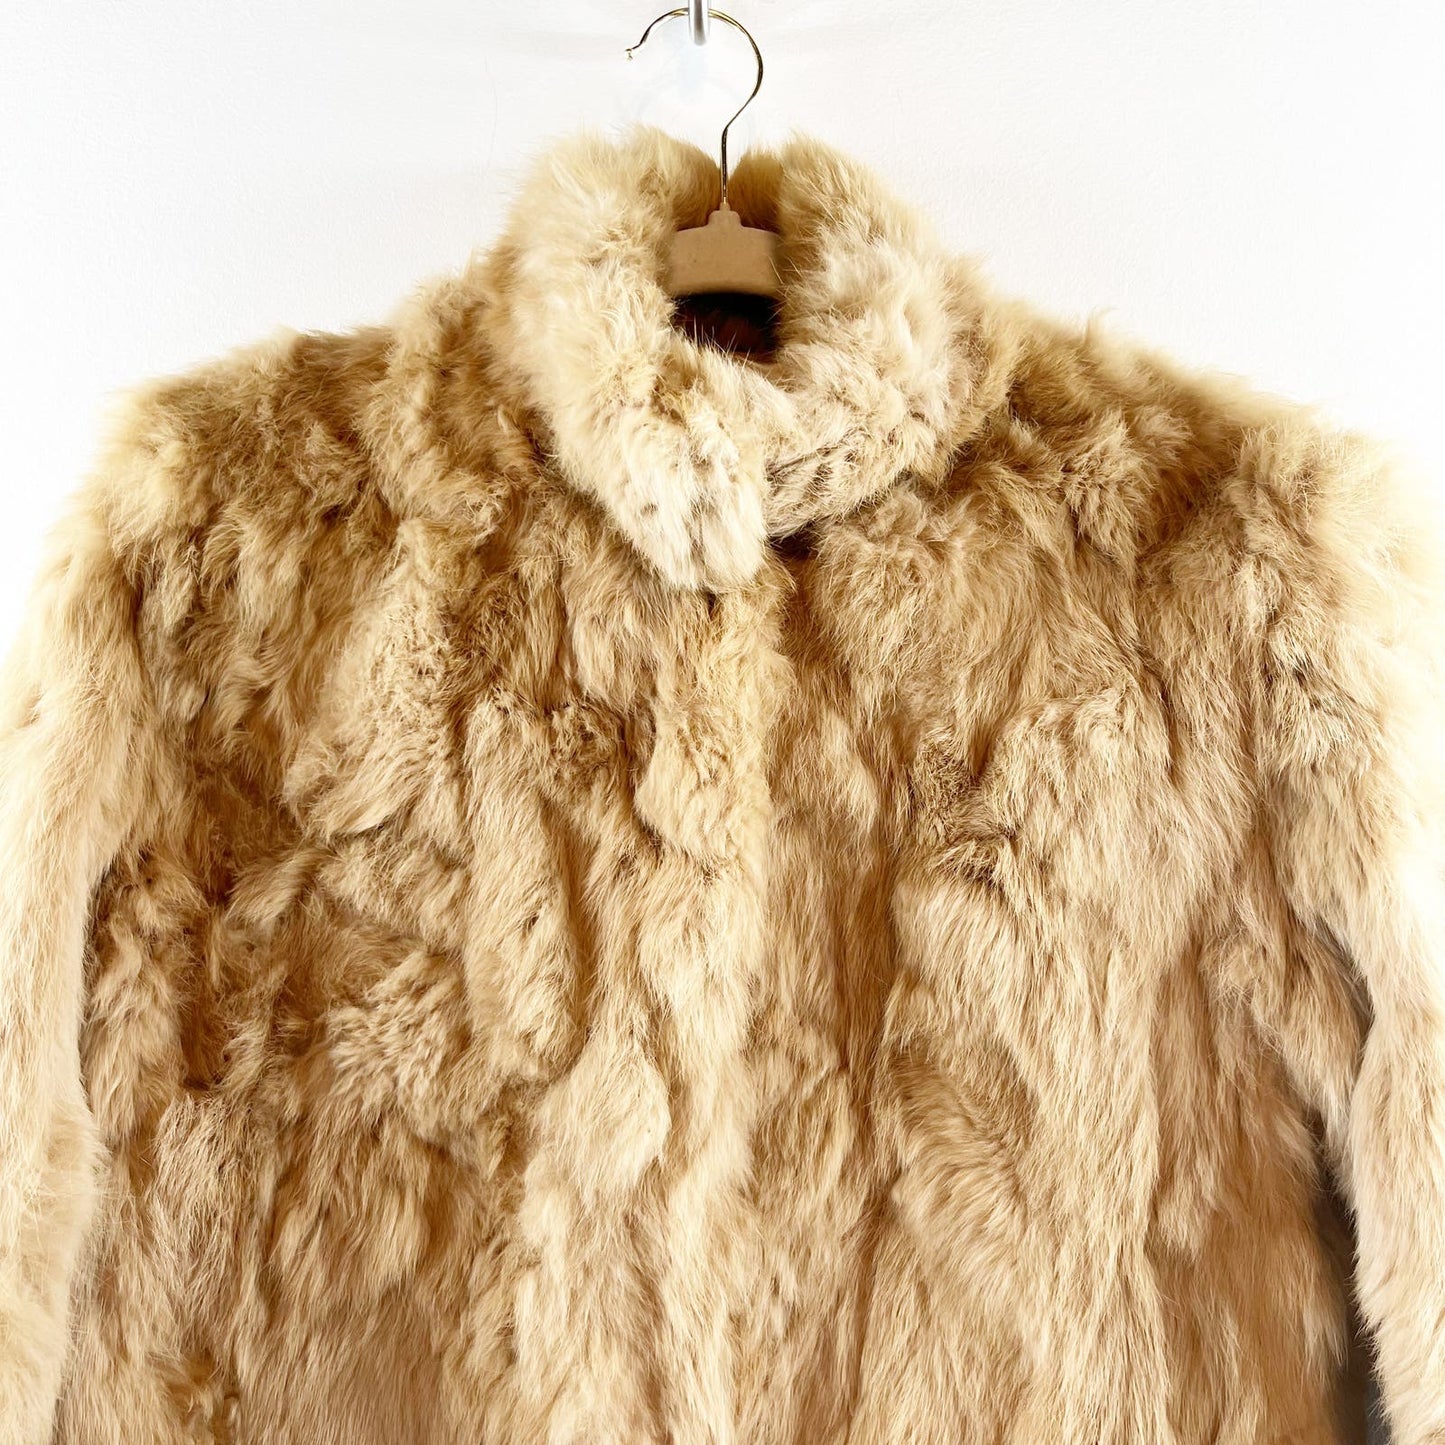 Wilsons Genuine Vintage Leather Maxima Real Fur Jacket Coat Tan Medium